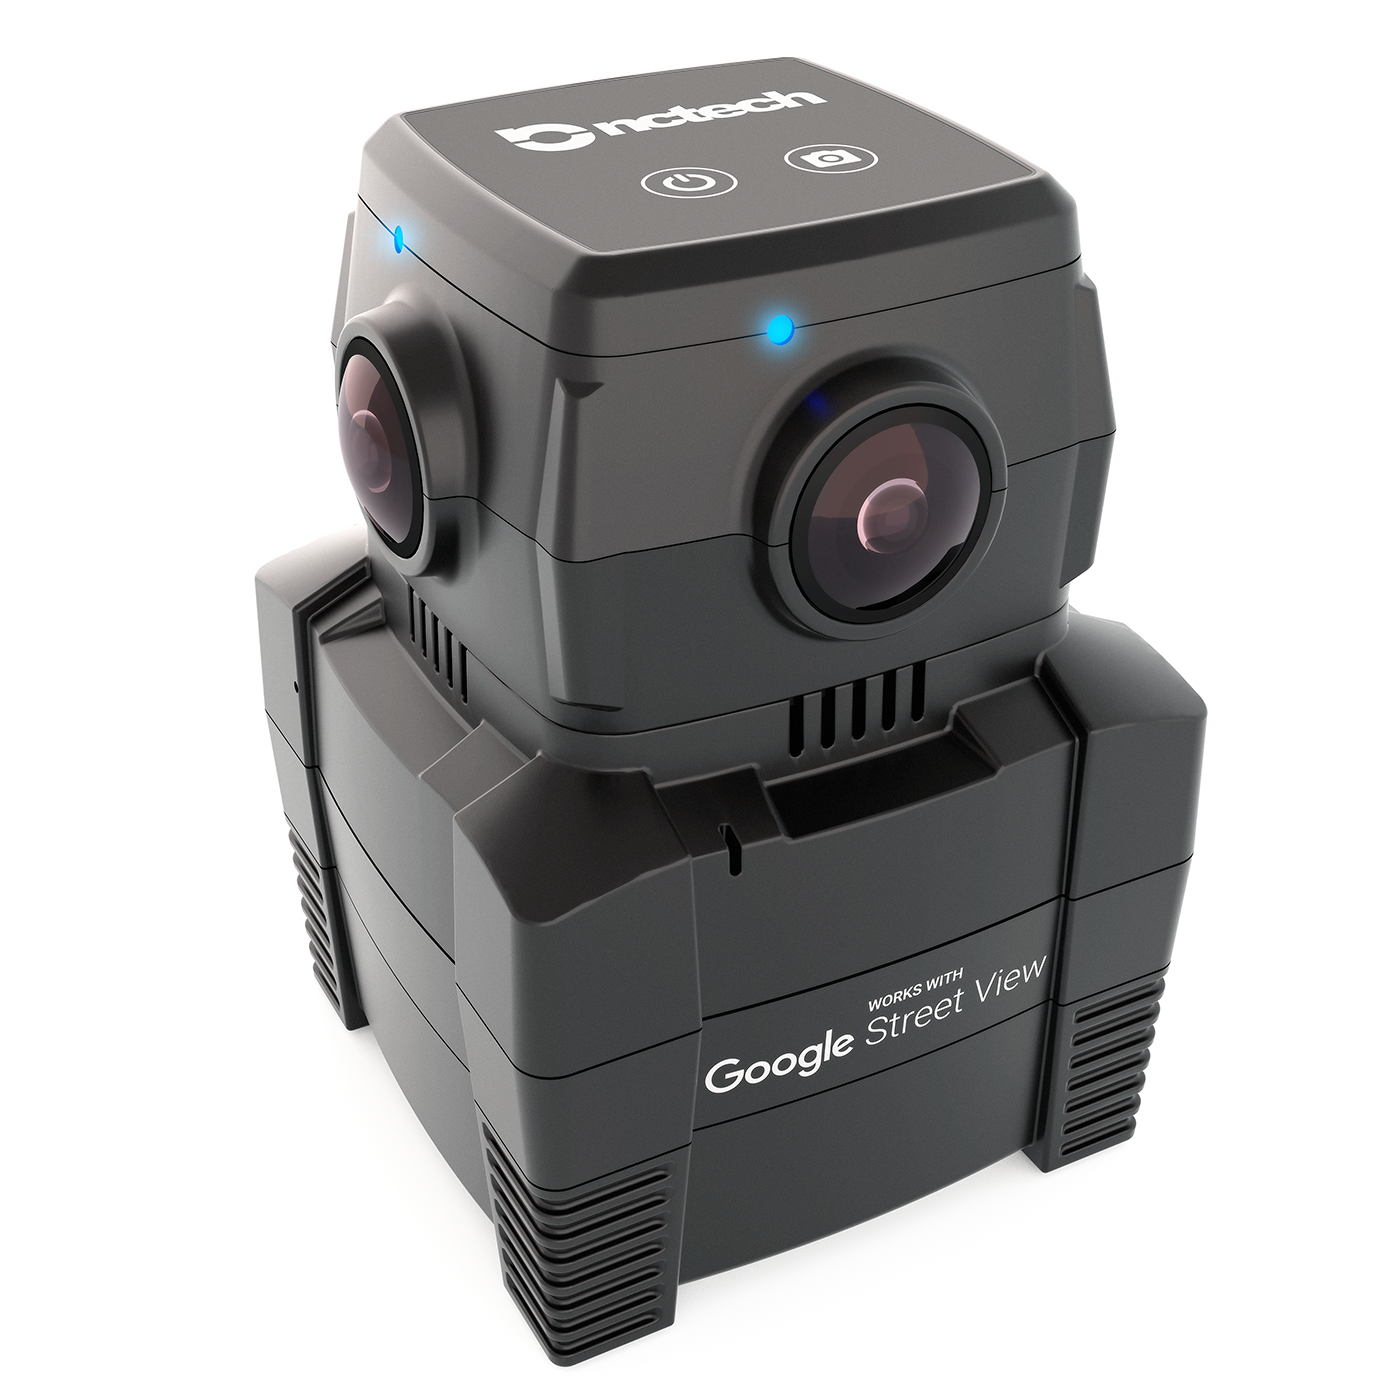 cameras 360 degree vr laser scanner google camera nctech Render 3D products